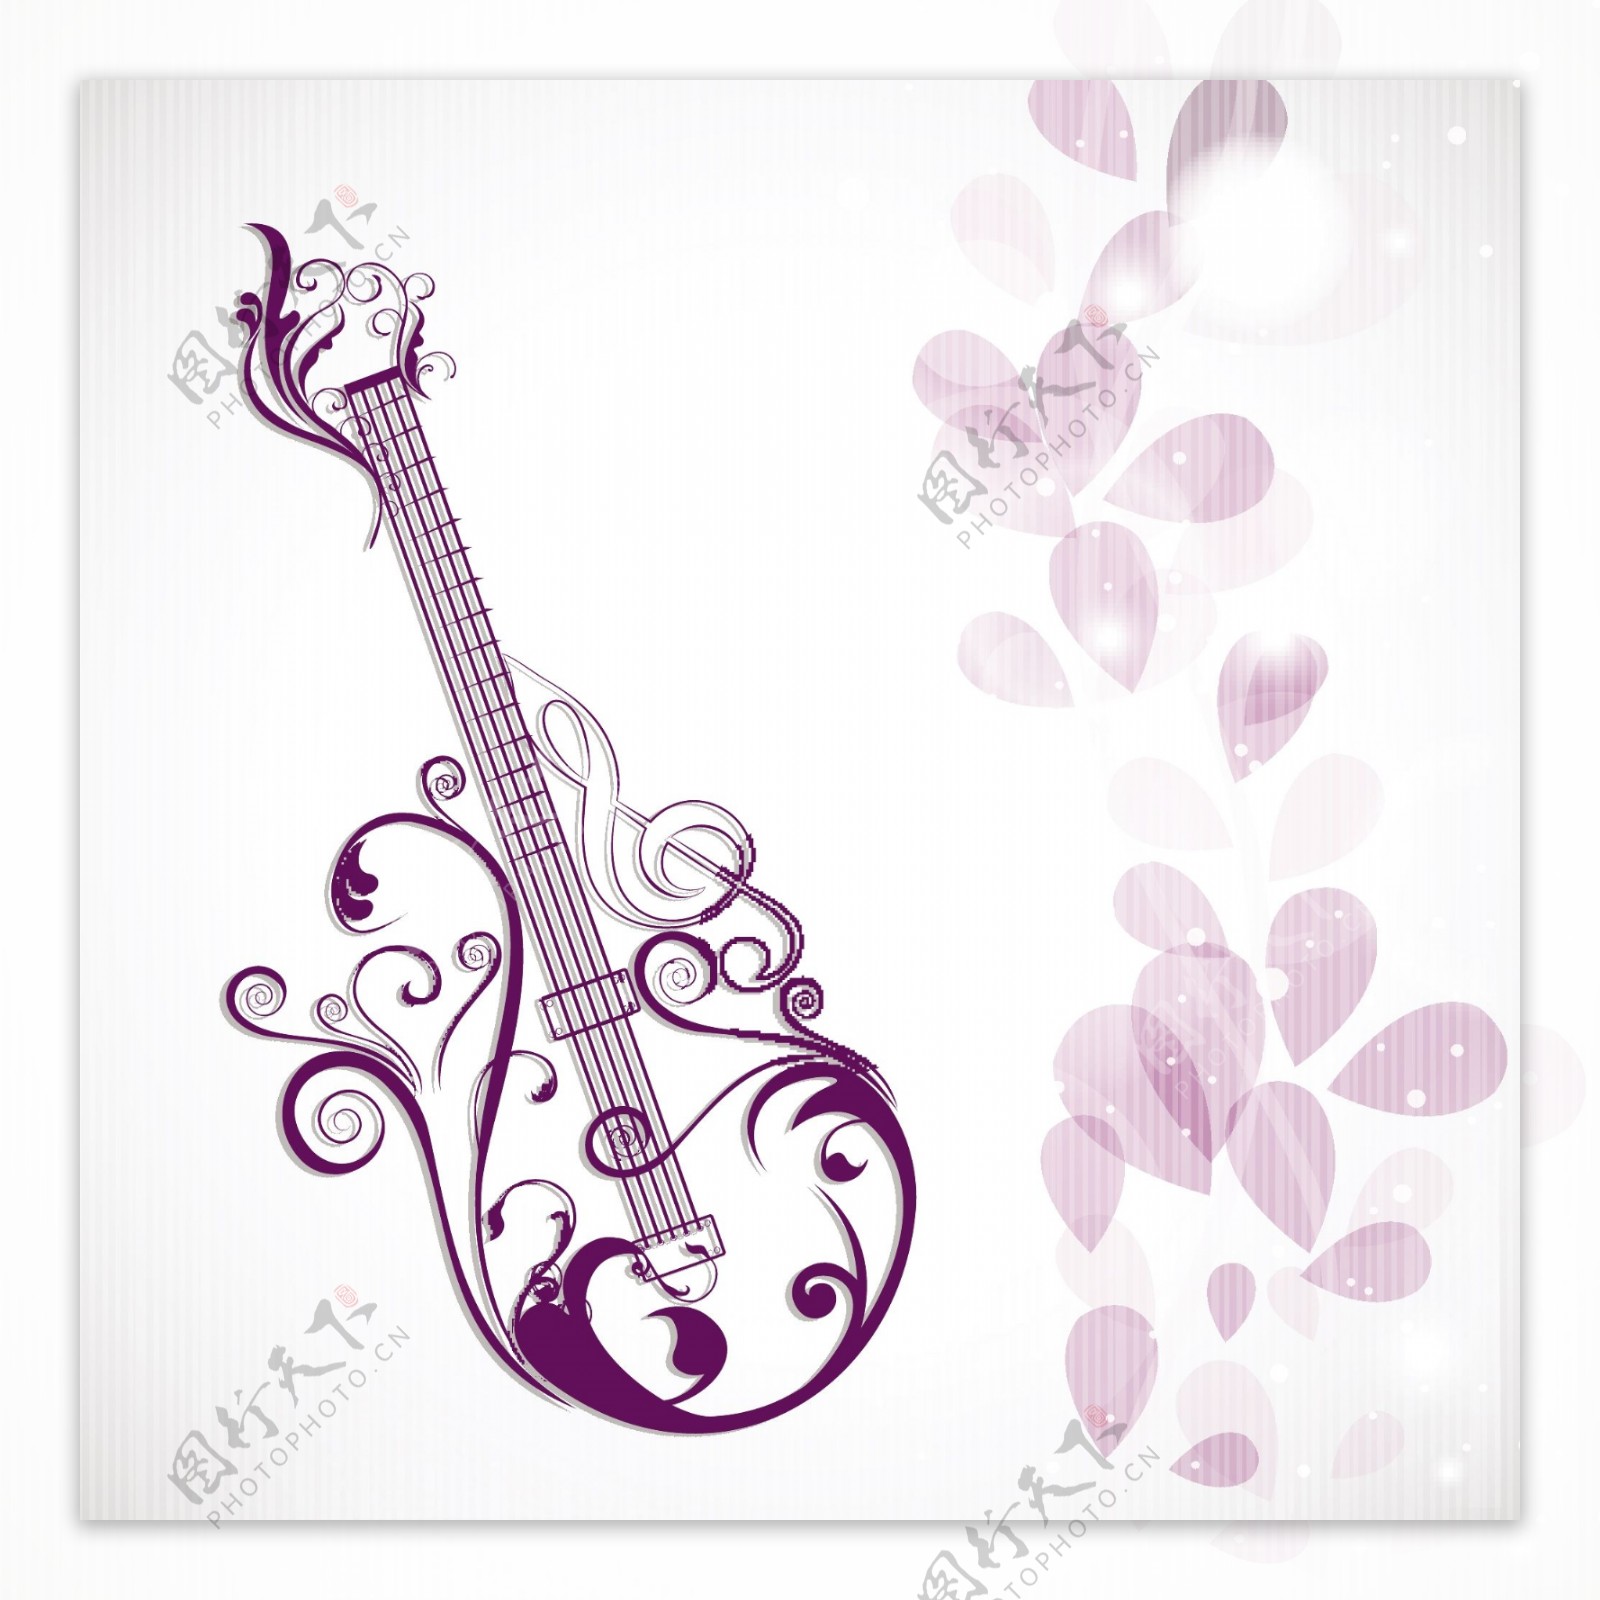 向量的音乐理念与花卉装饰的吉他花装饰背景